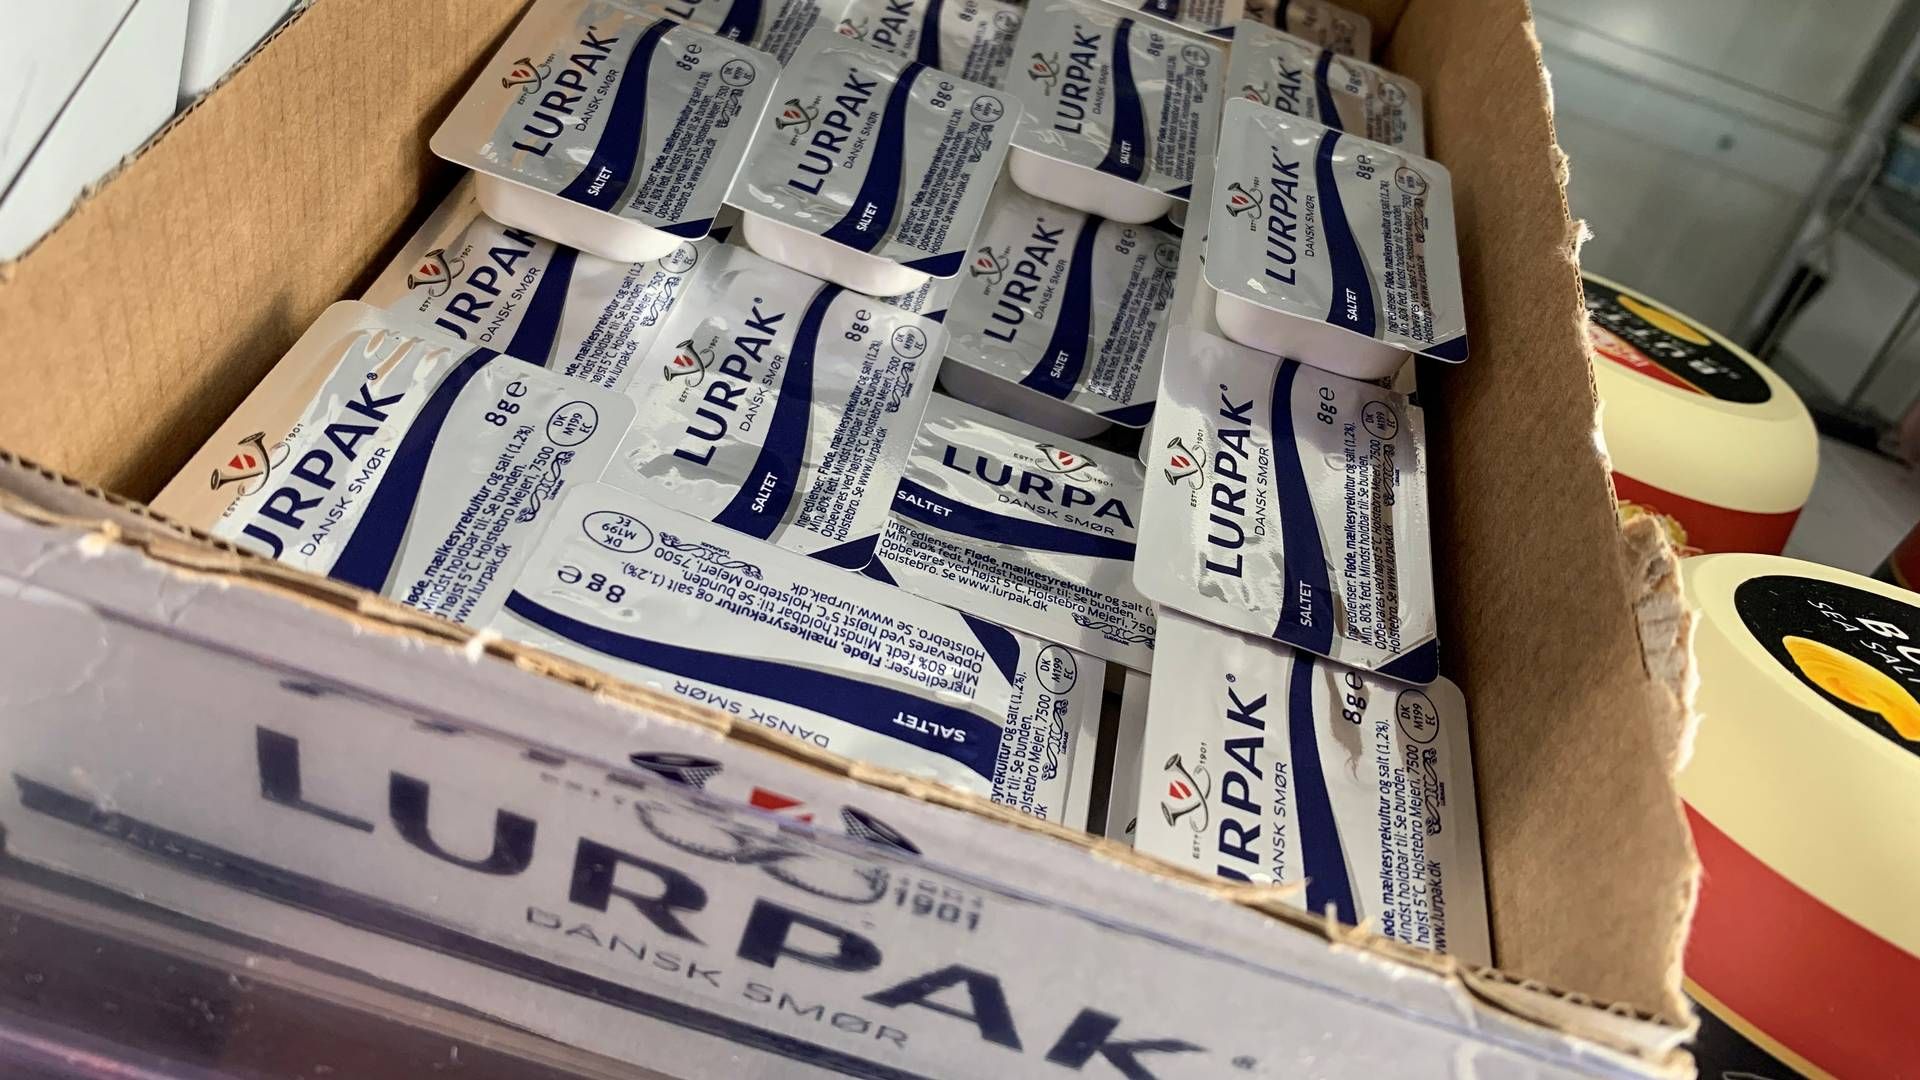 Forbrugerne er på vej tilbage mod de dyrere Arla-produkter som Lurpak-smørret efter at have søgt mod discount i første del af 2023. | Foto: Jacob Gronholt-Pedersen/Reuters/Ritzau Scanpix